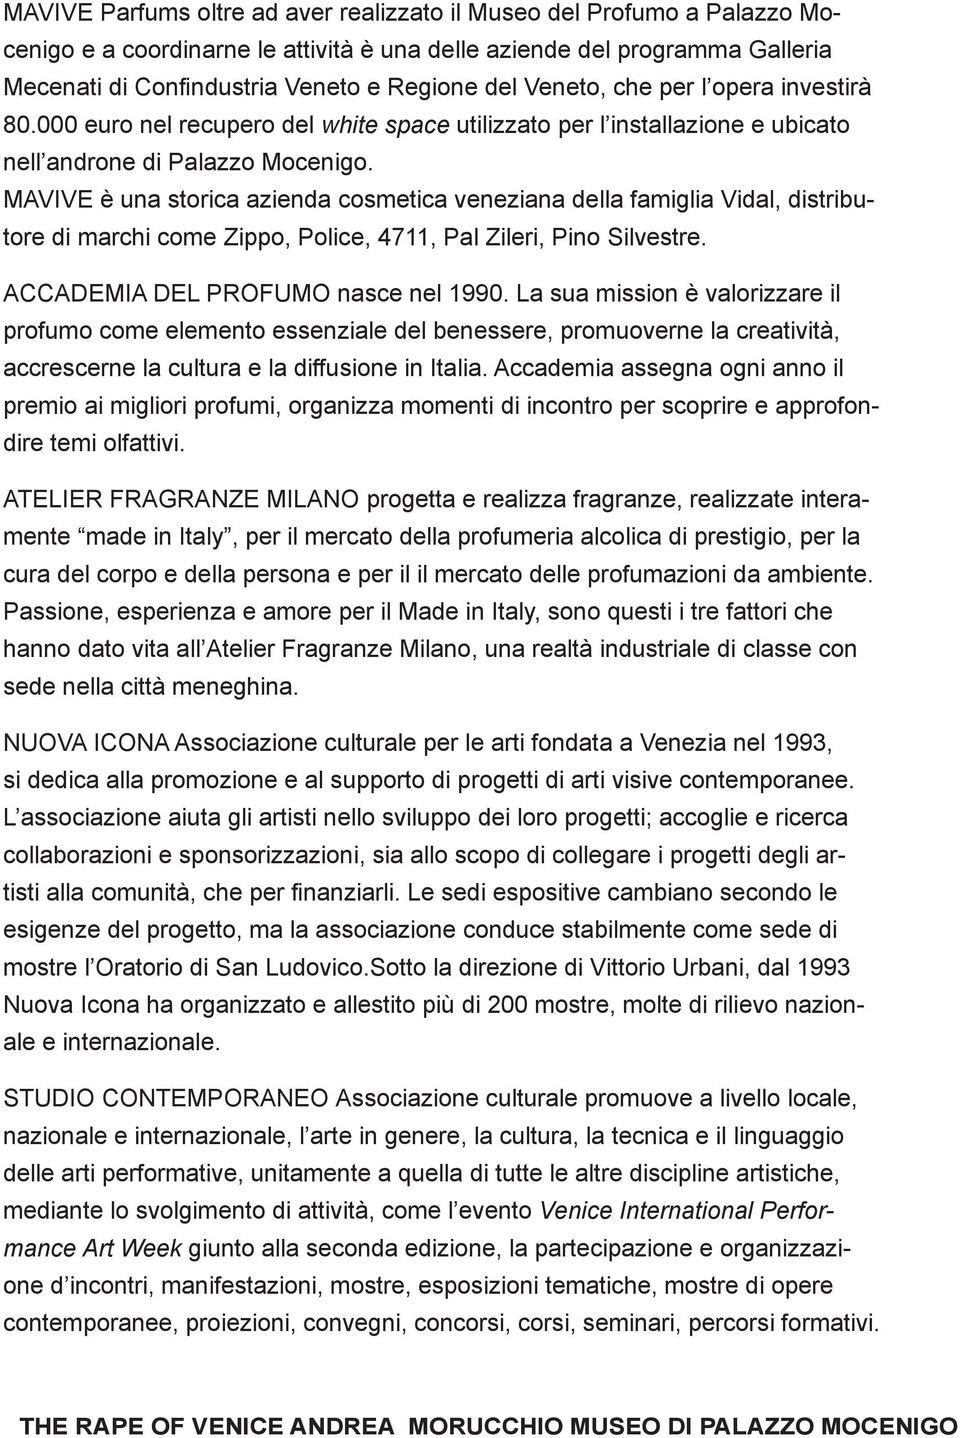 MAVIVE è una storica azienda cosmetica veneziana della famiglia Vidal, distributore di marchi come Zippo, Police, 4711, Pal Zileri, Pino Silvestre. ACCADEMIA DEL PROFUMO nasce nel 1990.